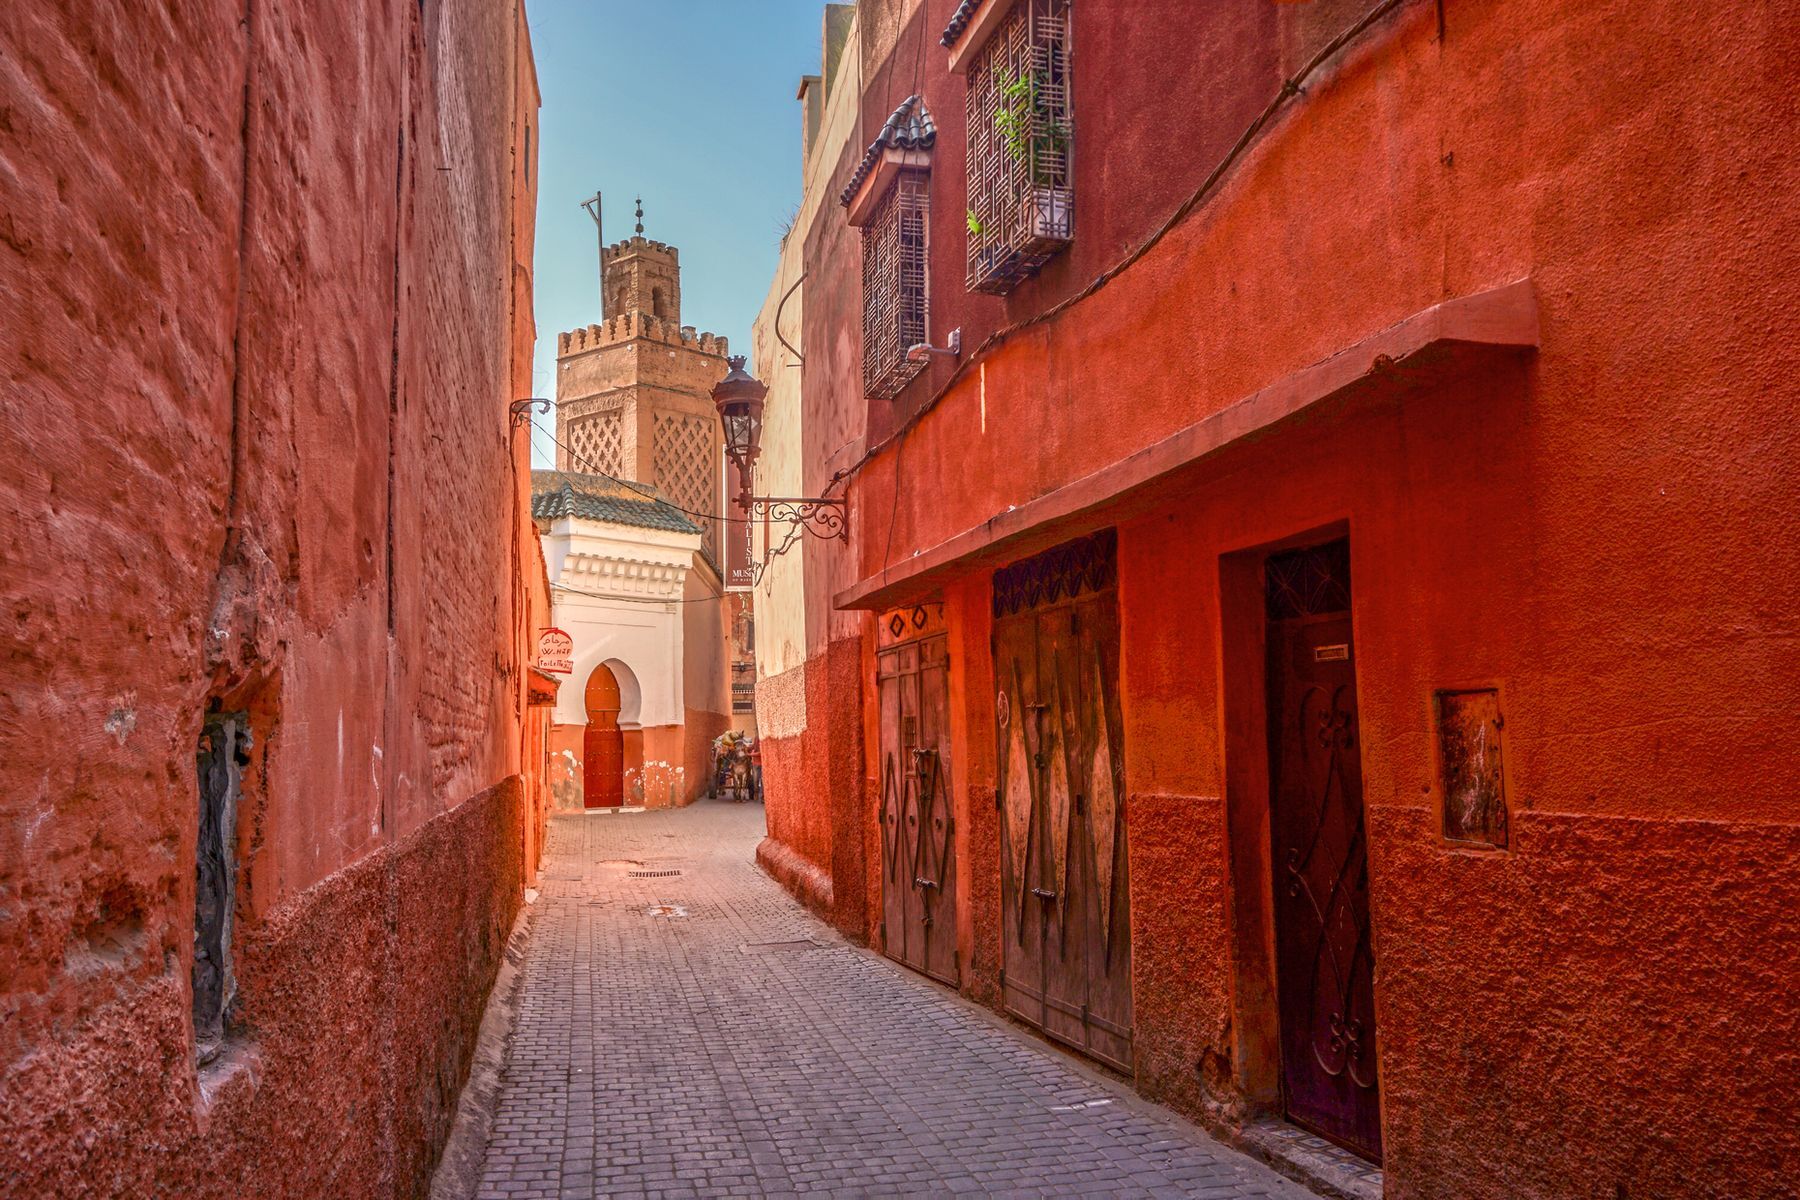 <p>Marrakech est surnommée <a href="https://www.marrakechsunset.com/fr/blog/pourquoi-on-appelle-marrakech-la-ville-rouge/37/">«la ville rouge»</a> ou «la ville ocre» en raison de la couleur de ses bâtiments en argile battue. Plusieurs hébergements à prix abordables vous permettent de vous loger en plein cœur de la cité près de ses attractions. Vous atteindrez ainsi rapidement <a href="https://palaisbahia.com/">le Palais de la Bahia</a>, construit à la fin du 19<sup>e</sup> siècle, que vous pouvez visiter pour seulement 70 dirhams (<a href="https://exchangerate.guru/mad/usd/70/">7 $US</a>). Son architecture islamique marocaine et ses couleurs vives sont d’une grande beauté. <a href="https://villatajmarrakech.com/guide/souk-marrakech/">Les souks de Marrakech</a>, marchés labyrinthiques mi-couverts, mi-ouverts, vous feront découvrir des merveilles marocaines dans leurs différents kiosques, où vous aurez l’occasion de marchander avec les commerçants. Épices locales, tapis, tajines traditionnels… L’offre est généreuse et très diversifiée.</p>